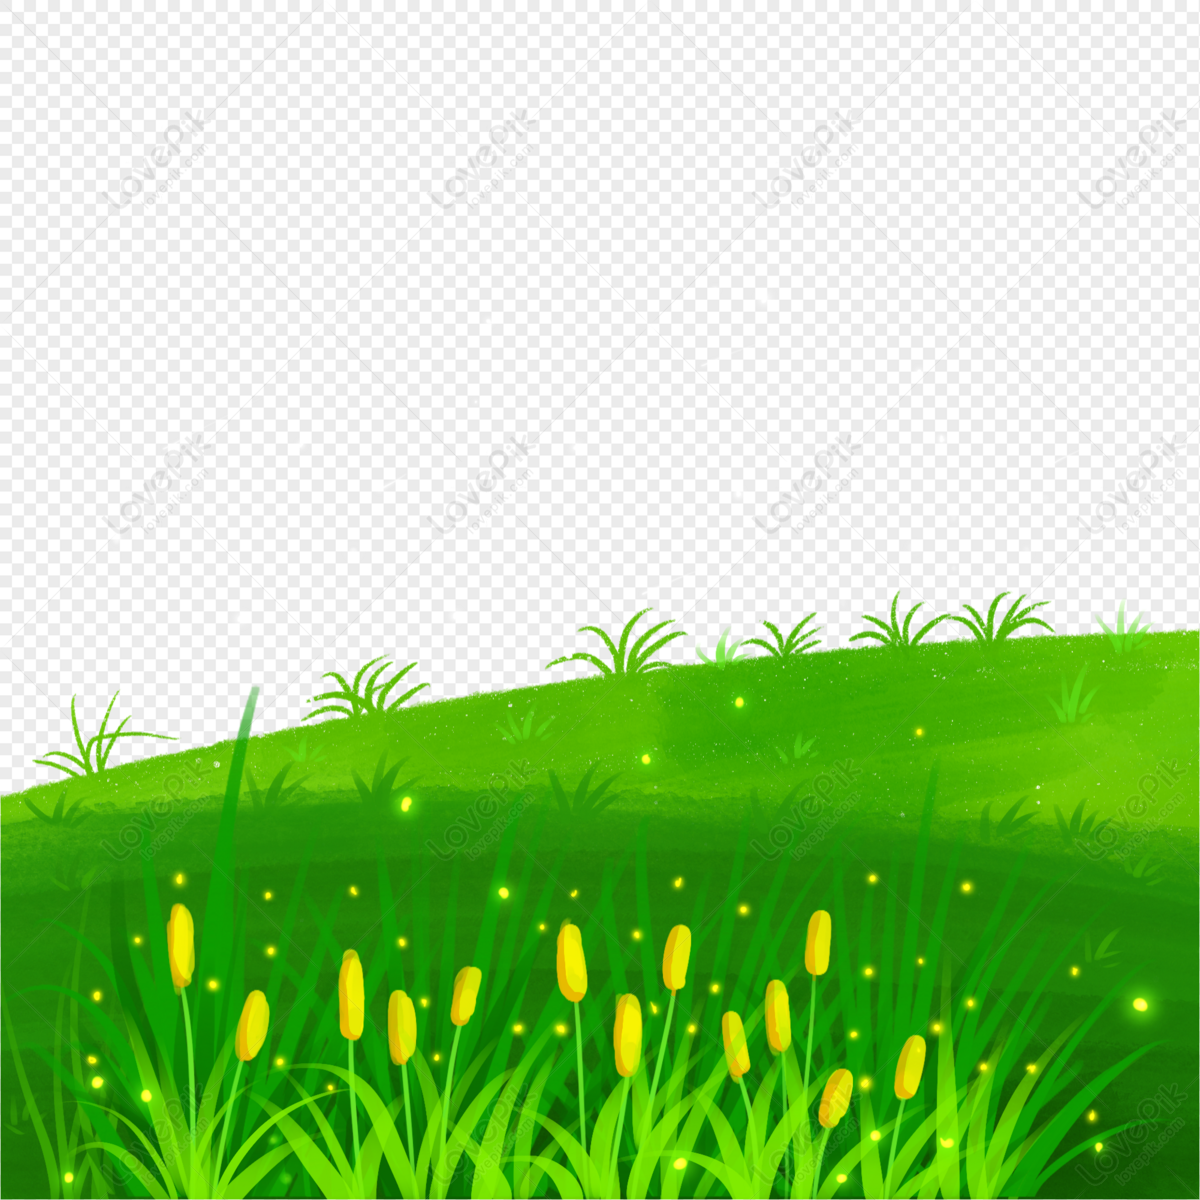 Cây cỏ (trees and grass): Với một hình ảnh kết hợp giữa cây cỏ, bạn sẽ được chiêm ngưỡng vẻ đẹp tự nhiên đầy tuyệt vời. Những thảm cỏ xanh biếc xen kẽ với những hàng cây, tạo ra cảnh quan hữu tình, chứa đựng nhiều câu chuyện thú vị cần khám phá.